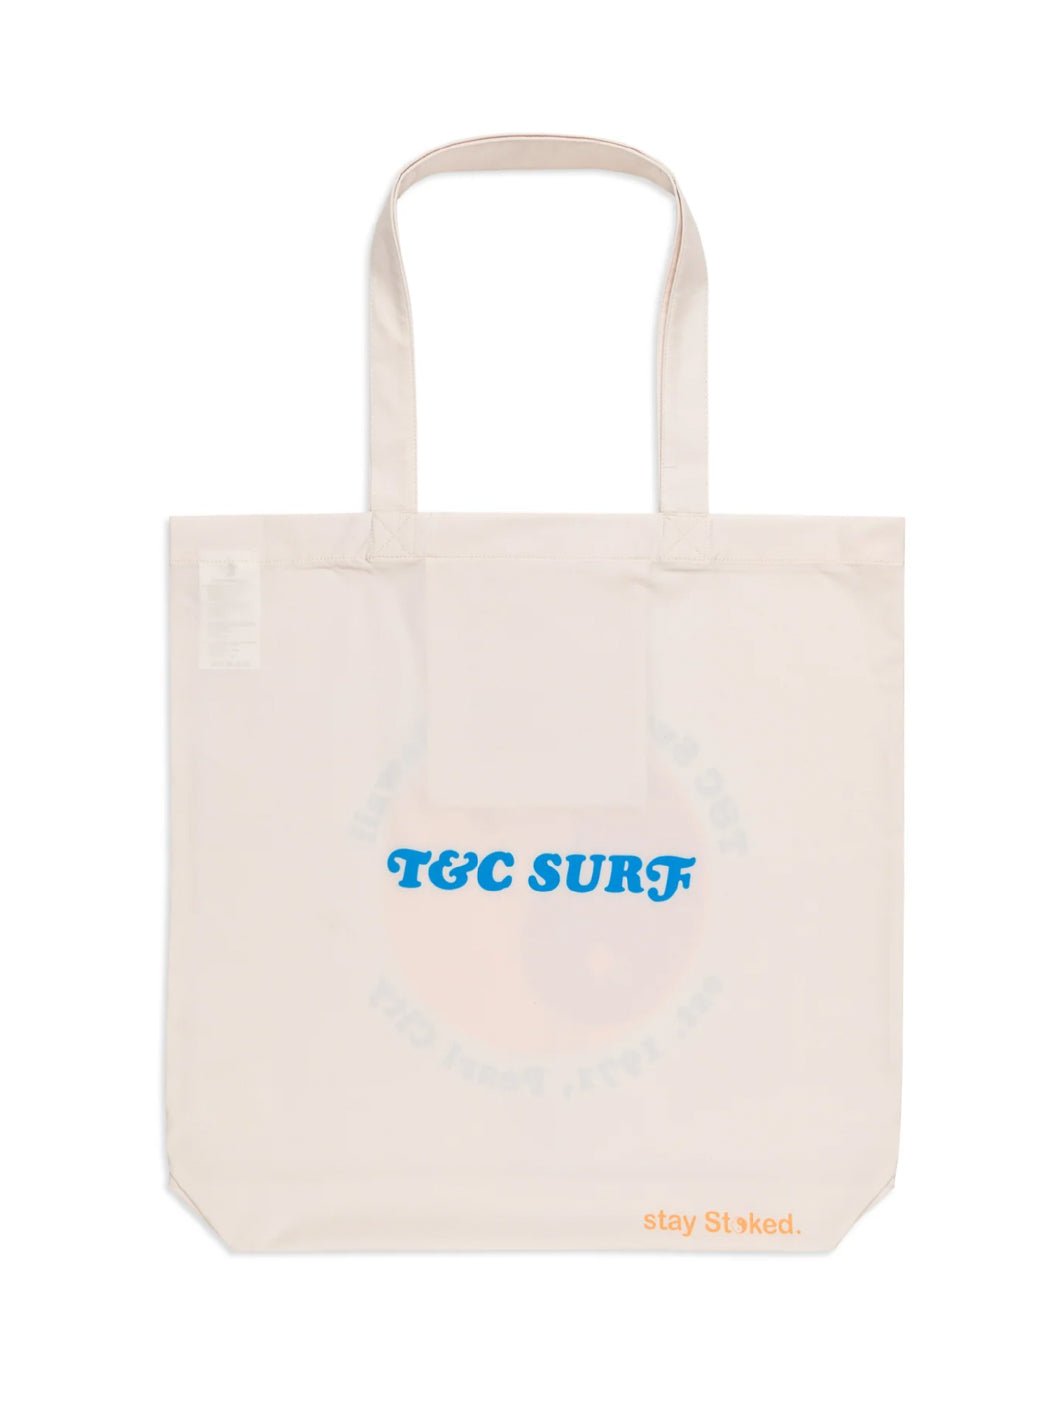 T&C Surf Designs T&C Surf Europe OG Logo Tote Bag, 